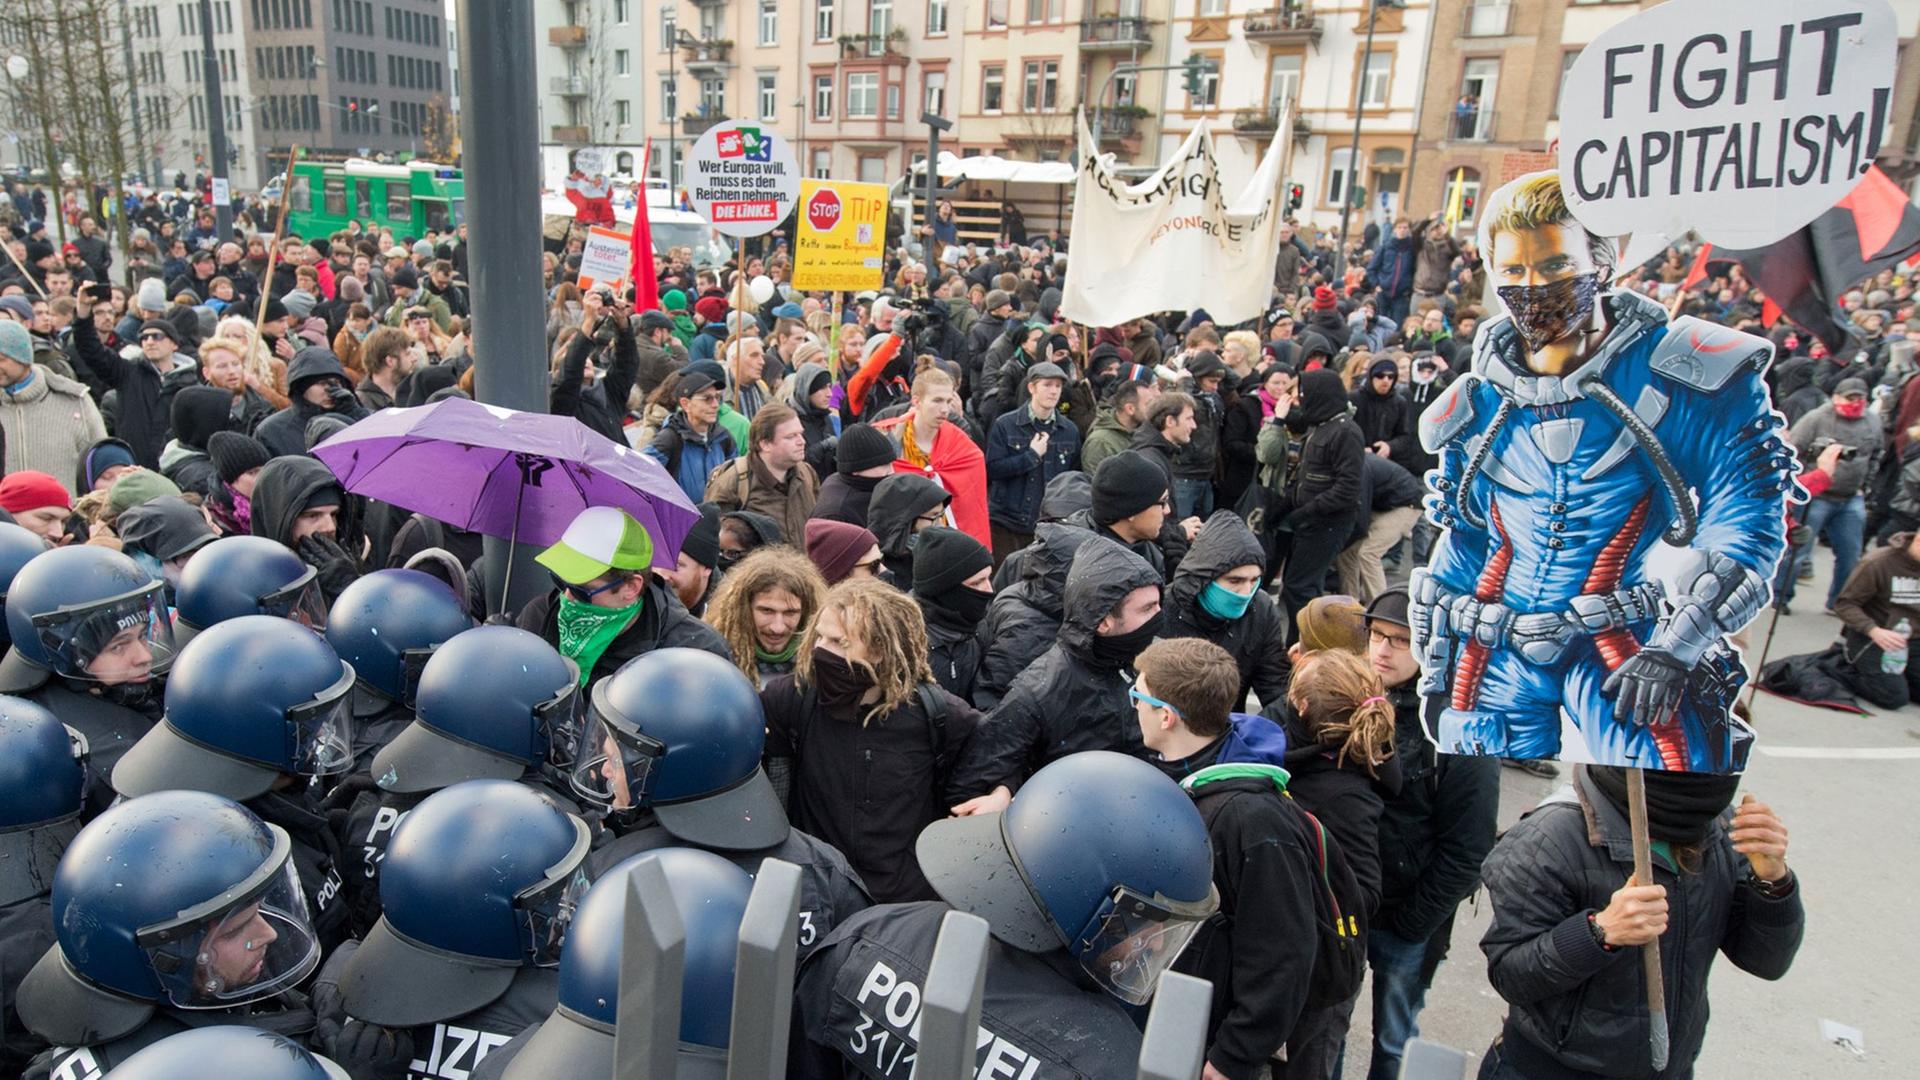 Blockupy-Demonstration gegen die Politik der Europäischen Zentralbank am 22.11.2014 in Frankfurt am Main.